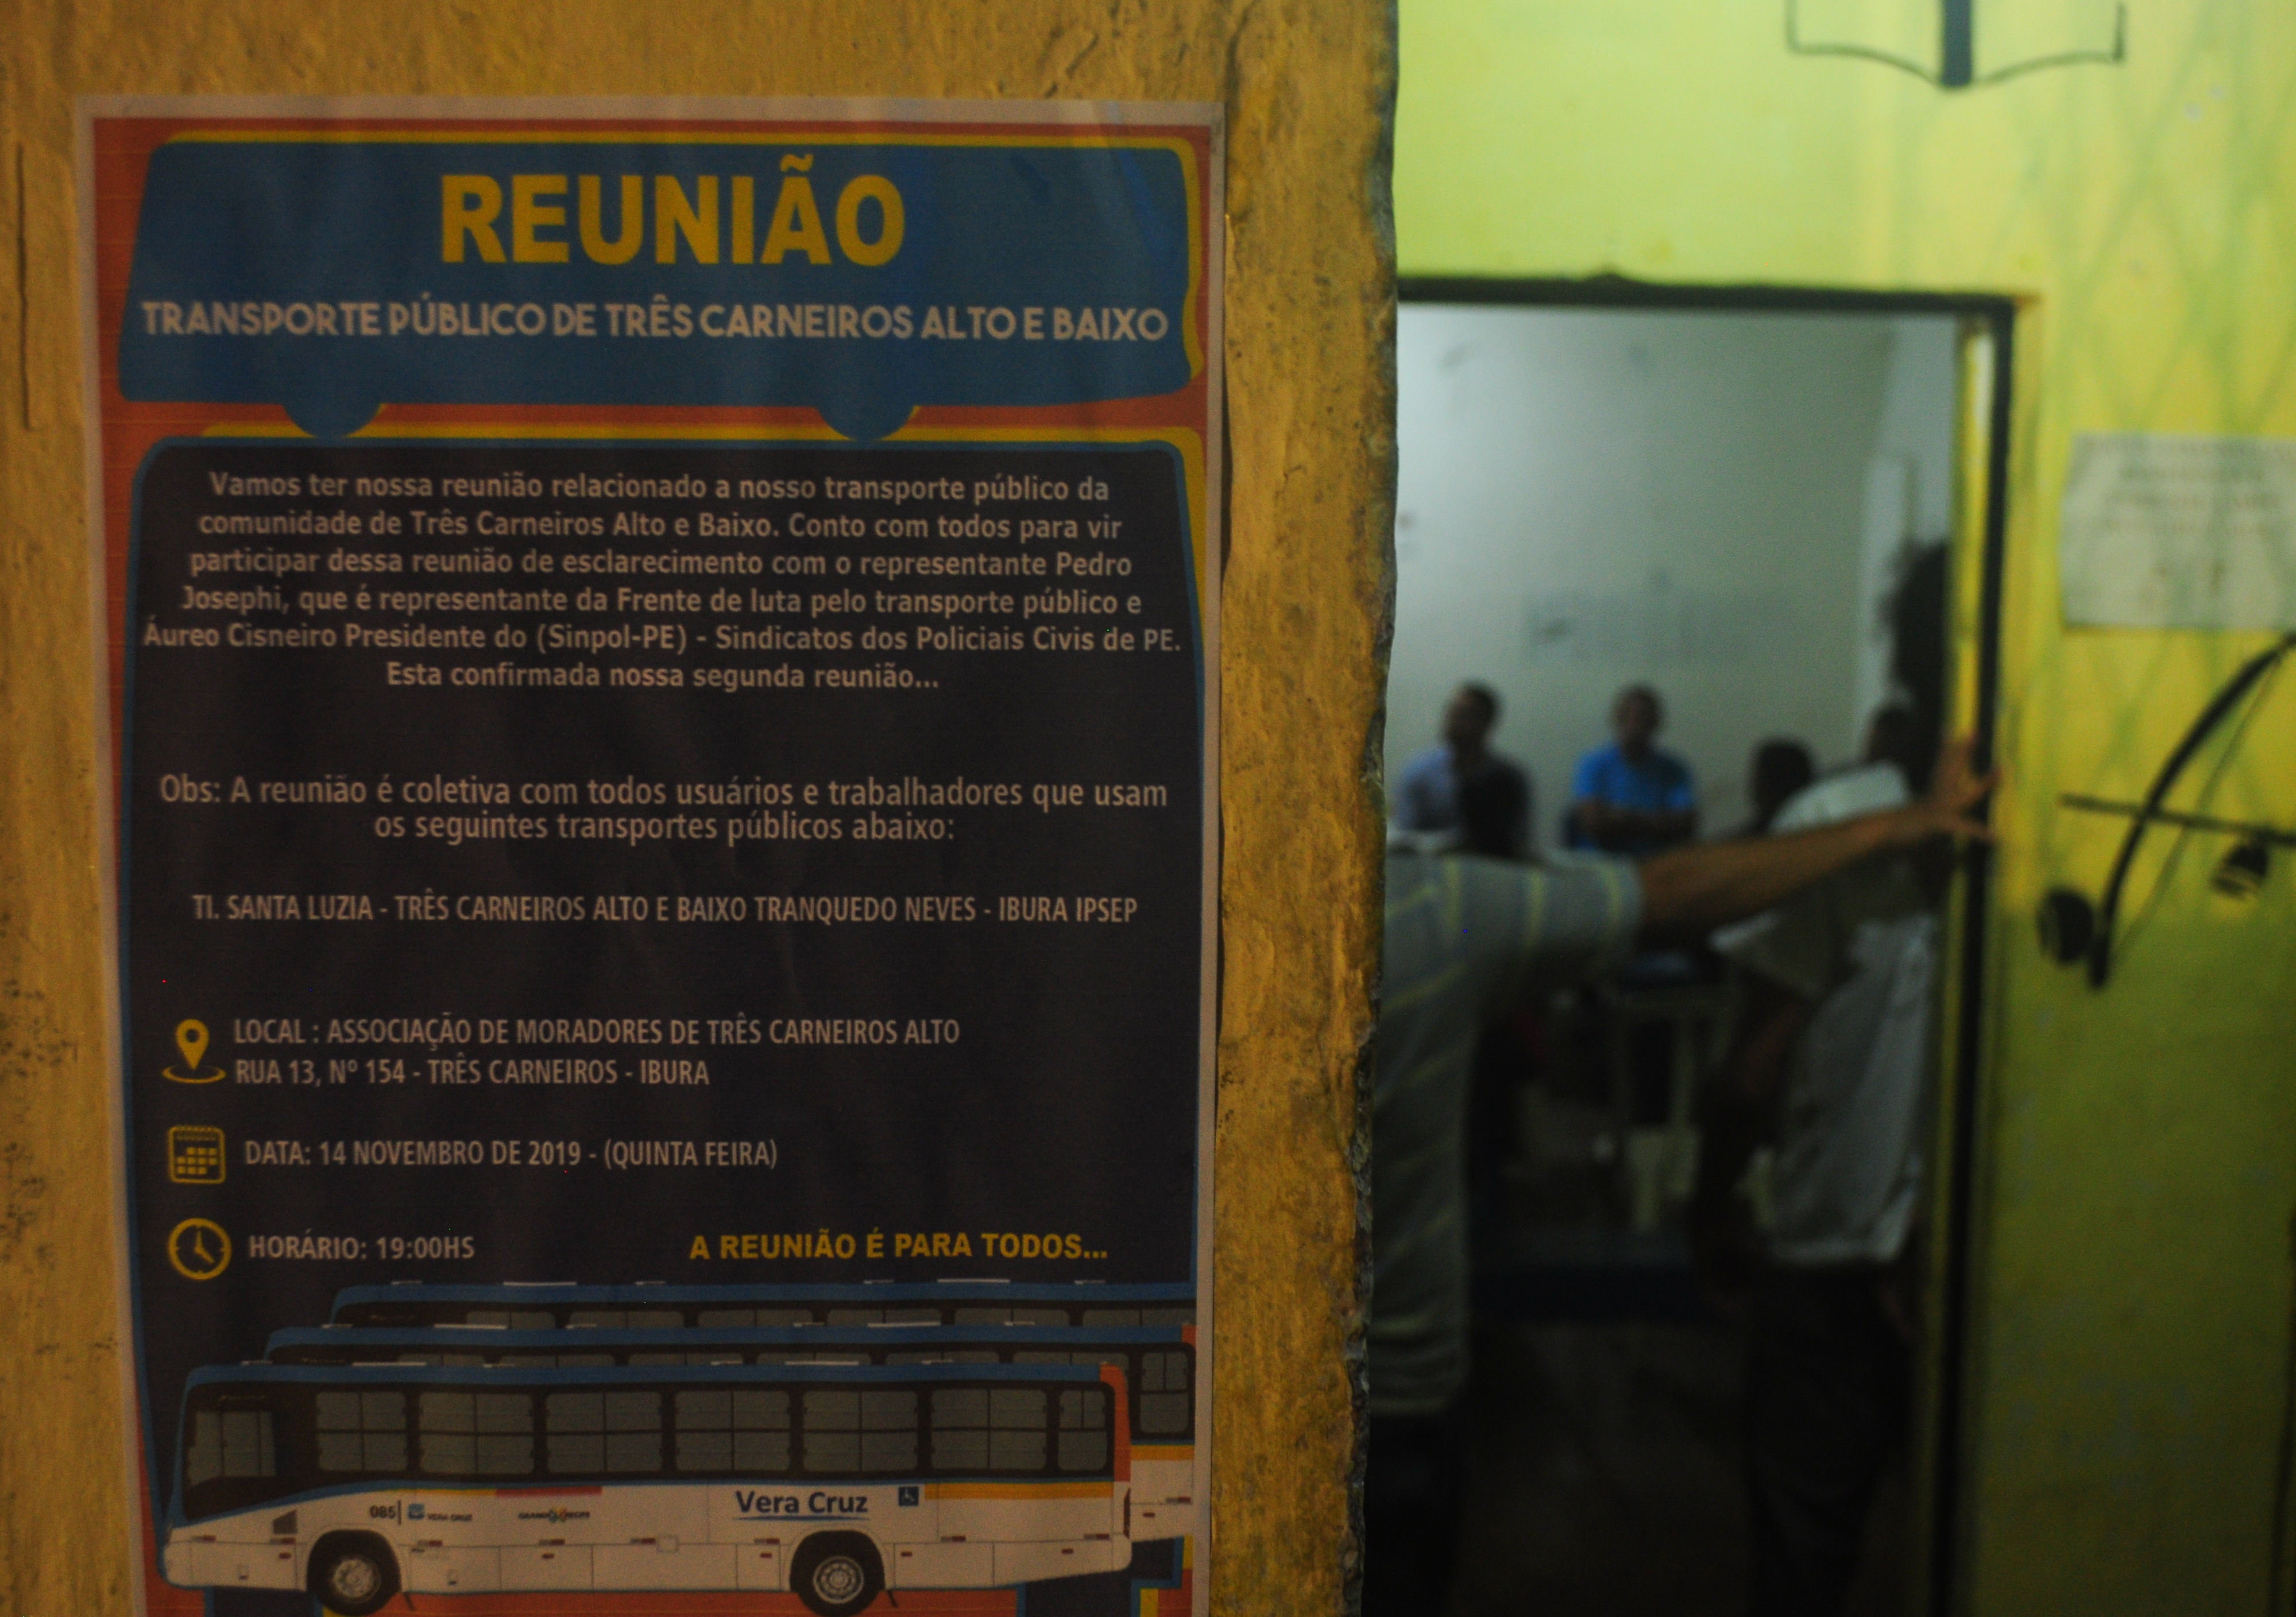 Reunião pelo transporte público de qualidade promove organização comunitária no Recife